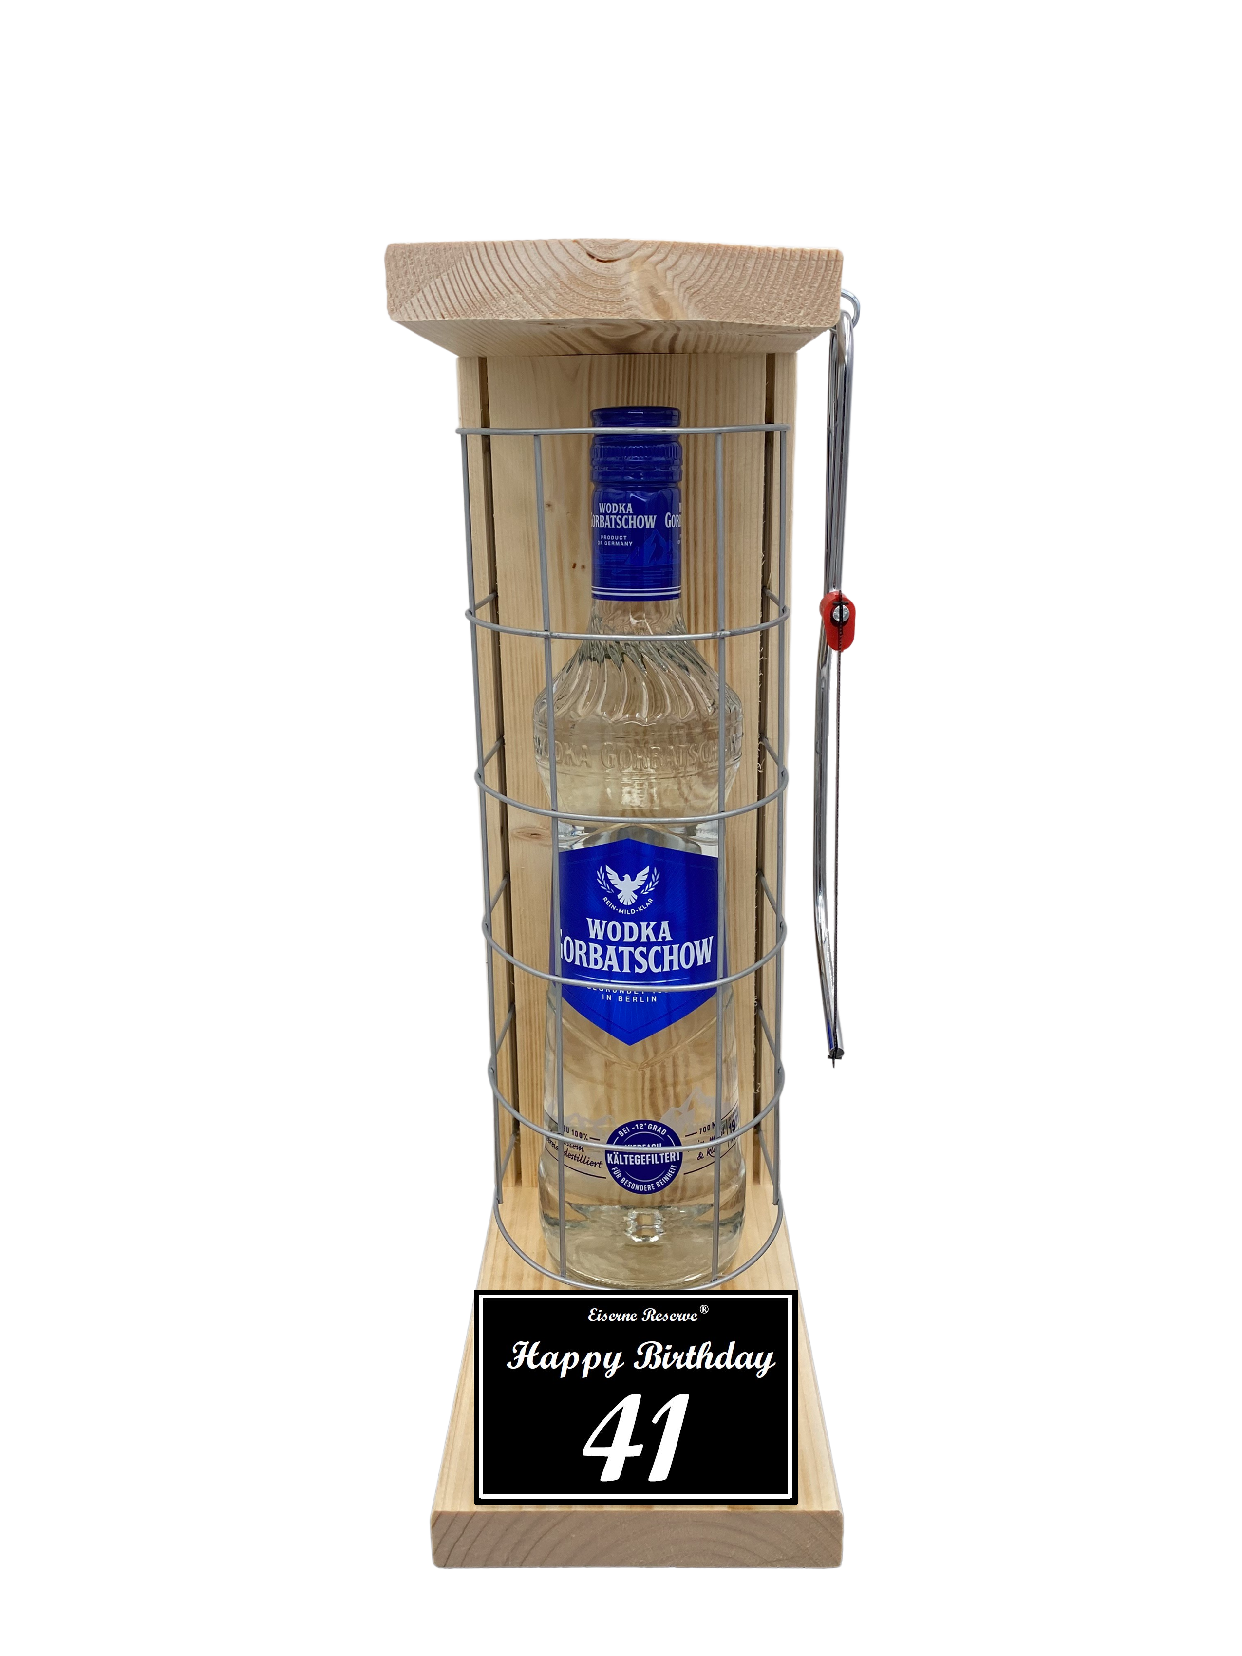 Wodka Geschenk zum 41 Geburtstag - Eiserne Reserve Gitterkäfig